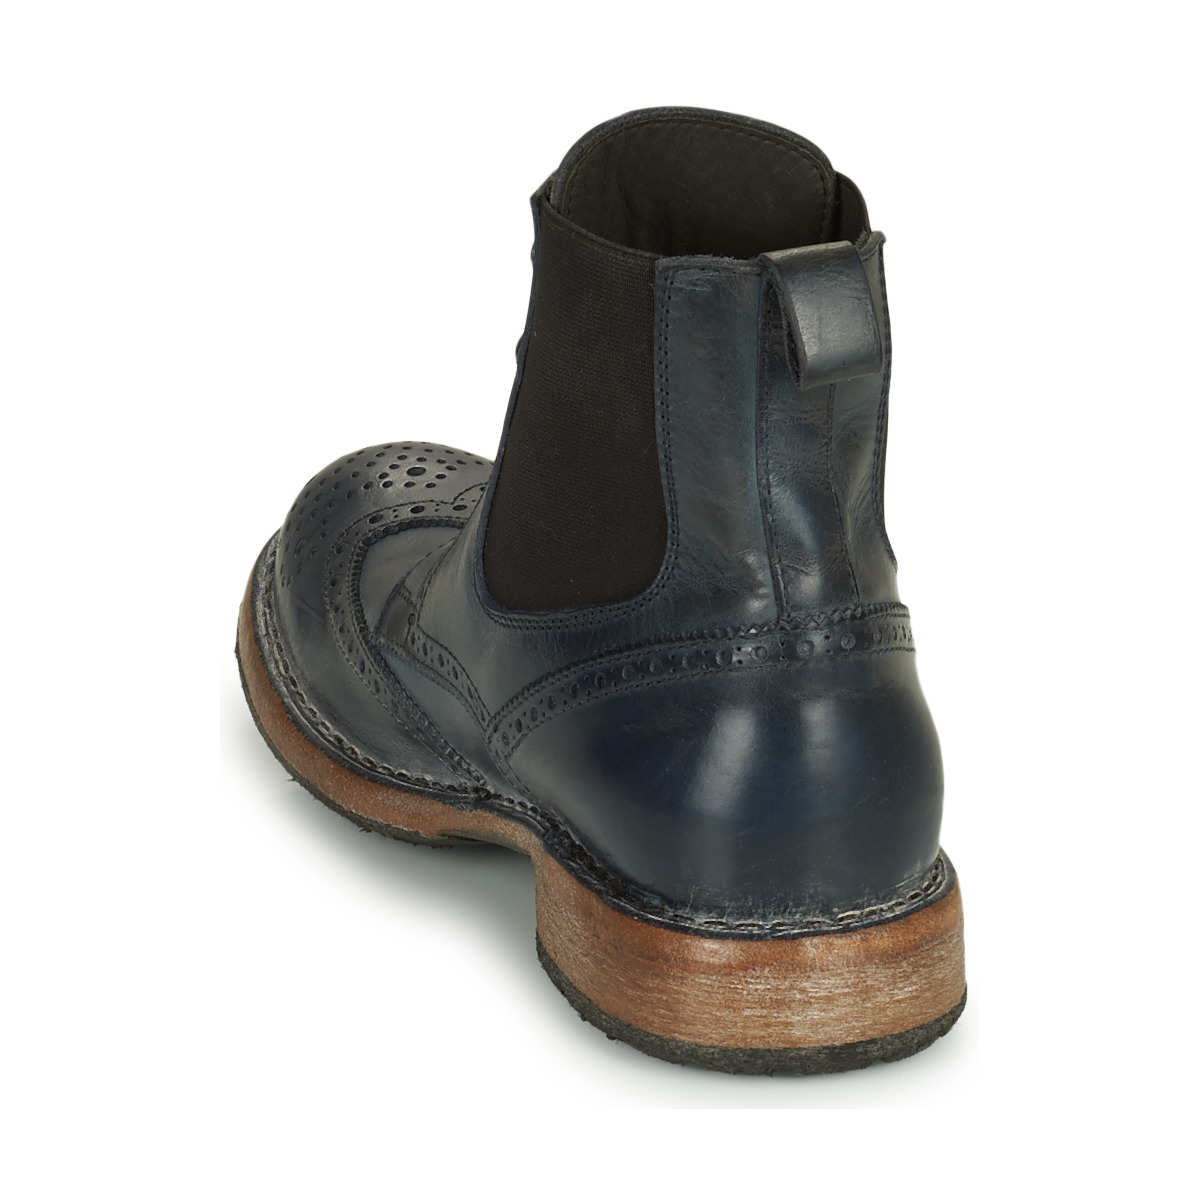 Moma意大利品牌男靴英伦风雕花布洛克靴深蓝色秋冬新款短筒皮靴